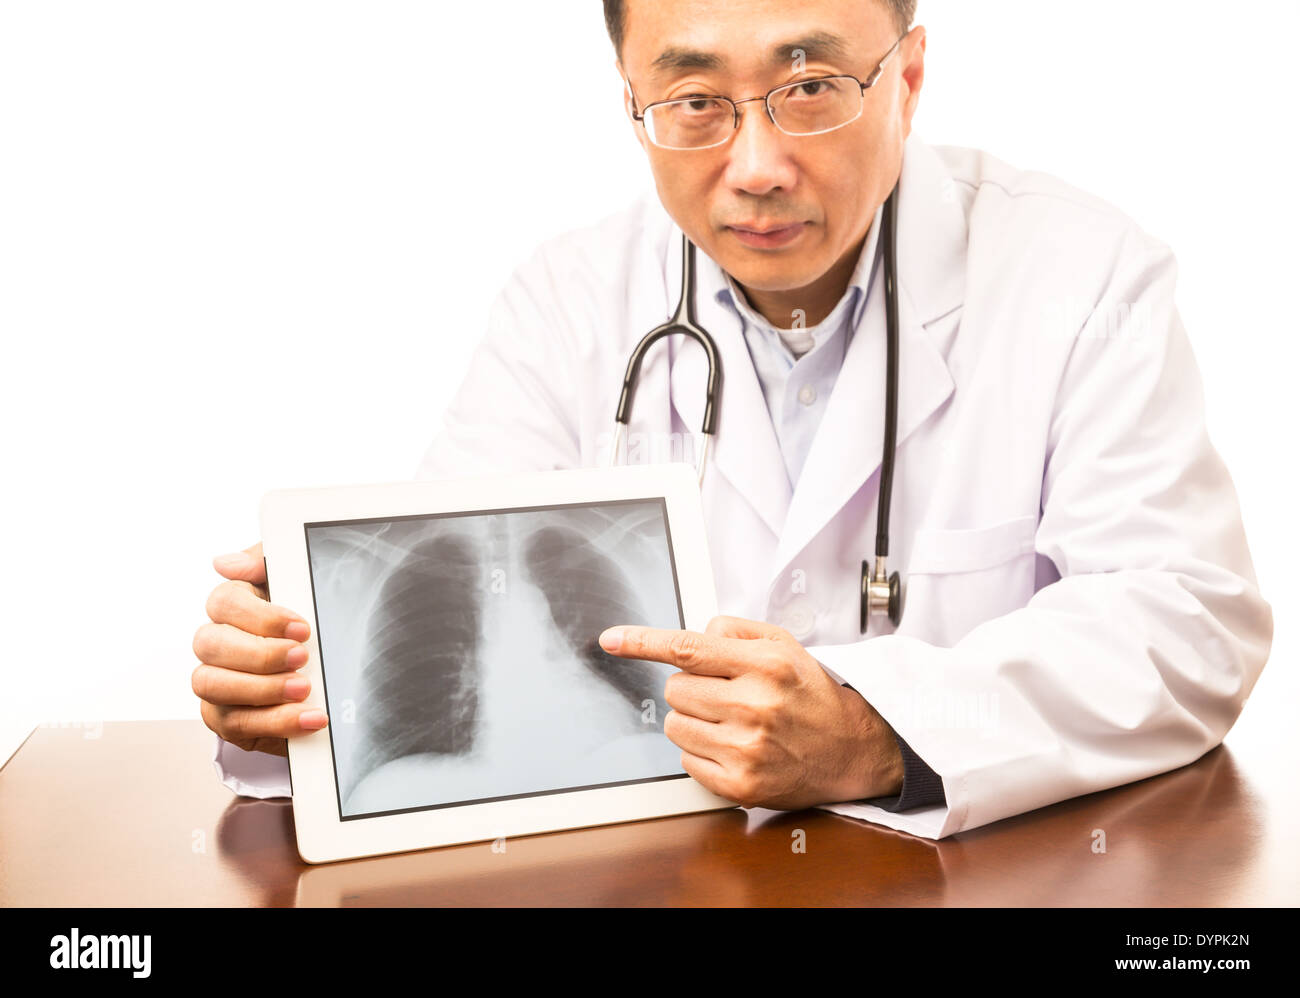 Doctor asiática sosteniendo una tableta con una imagen de rayos x Foto de stock